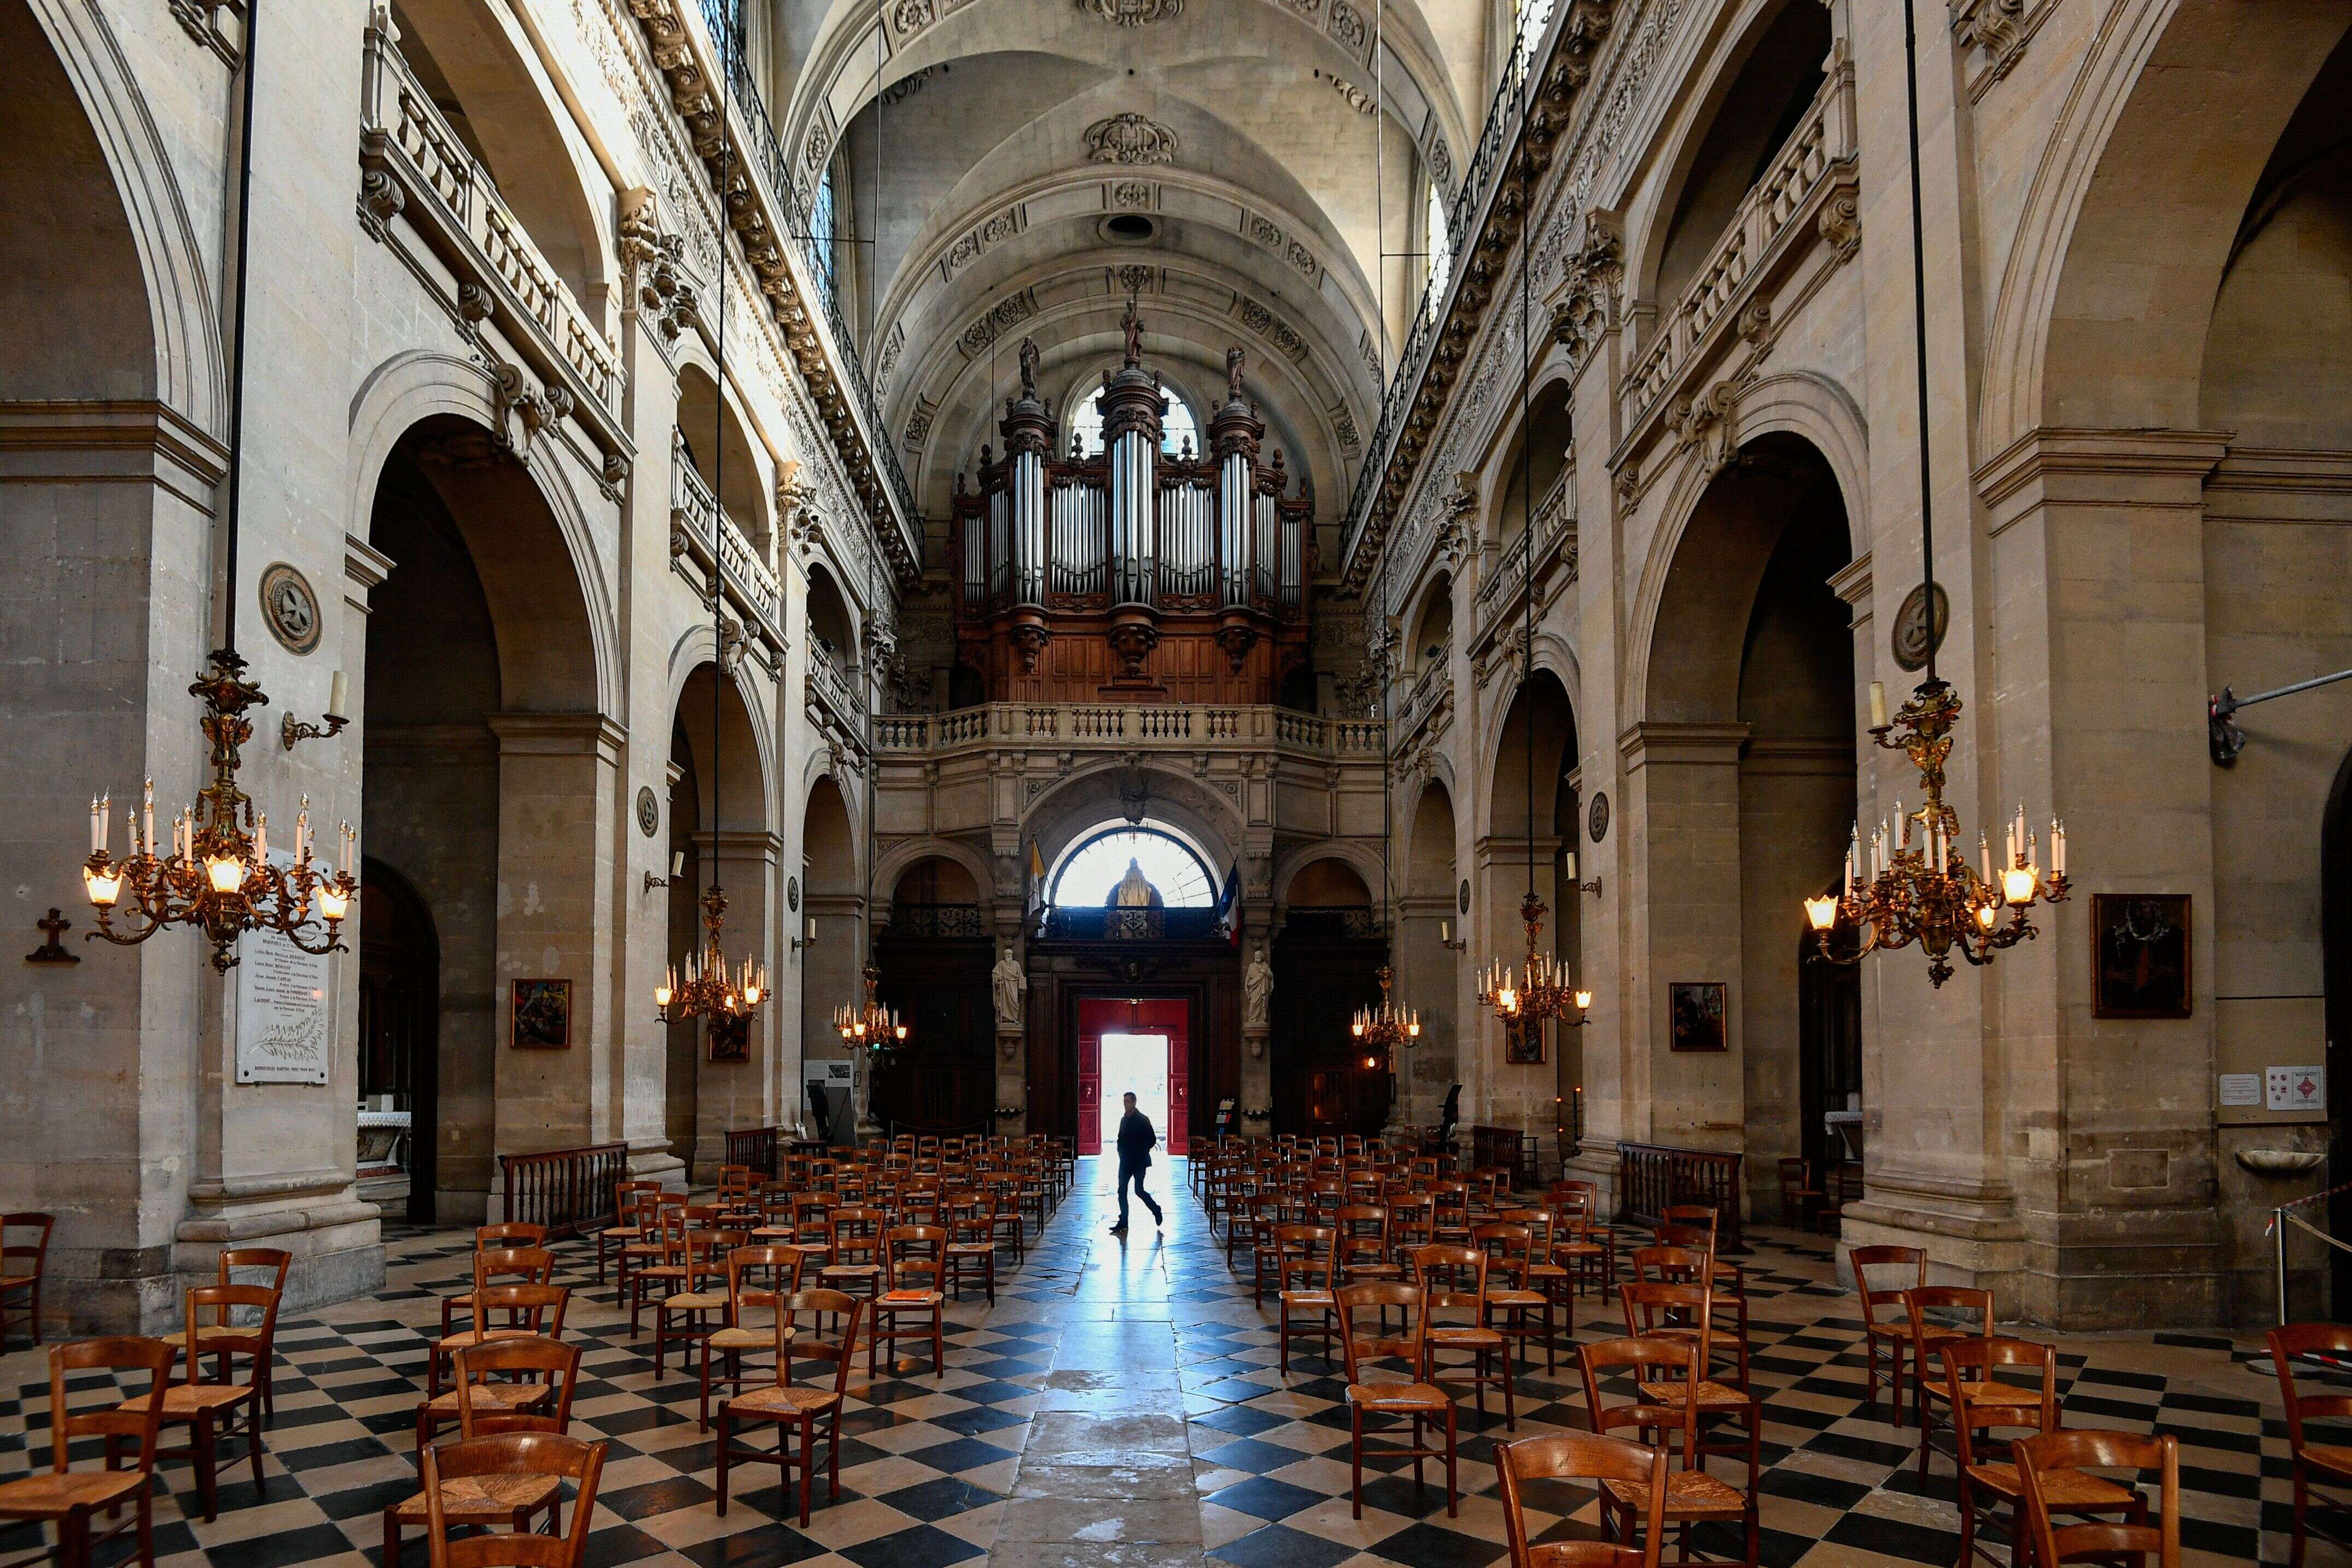 D'après le Conseil d'État, les mesures d'interdiction stricte des réunions dans les lieux de culte sont devenues ineptes à l'heure du déconfinement (image d'illustration à Saint-Paul Saint-Louis, dans le centre de Paris).